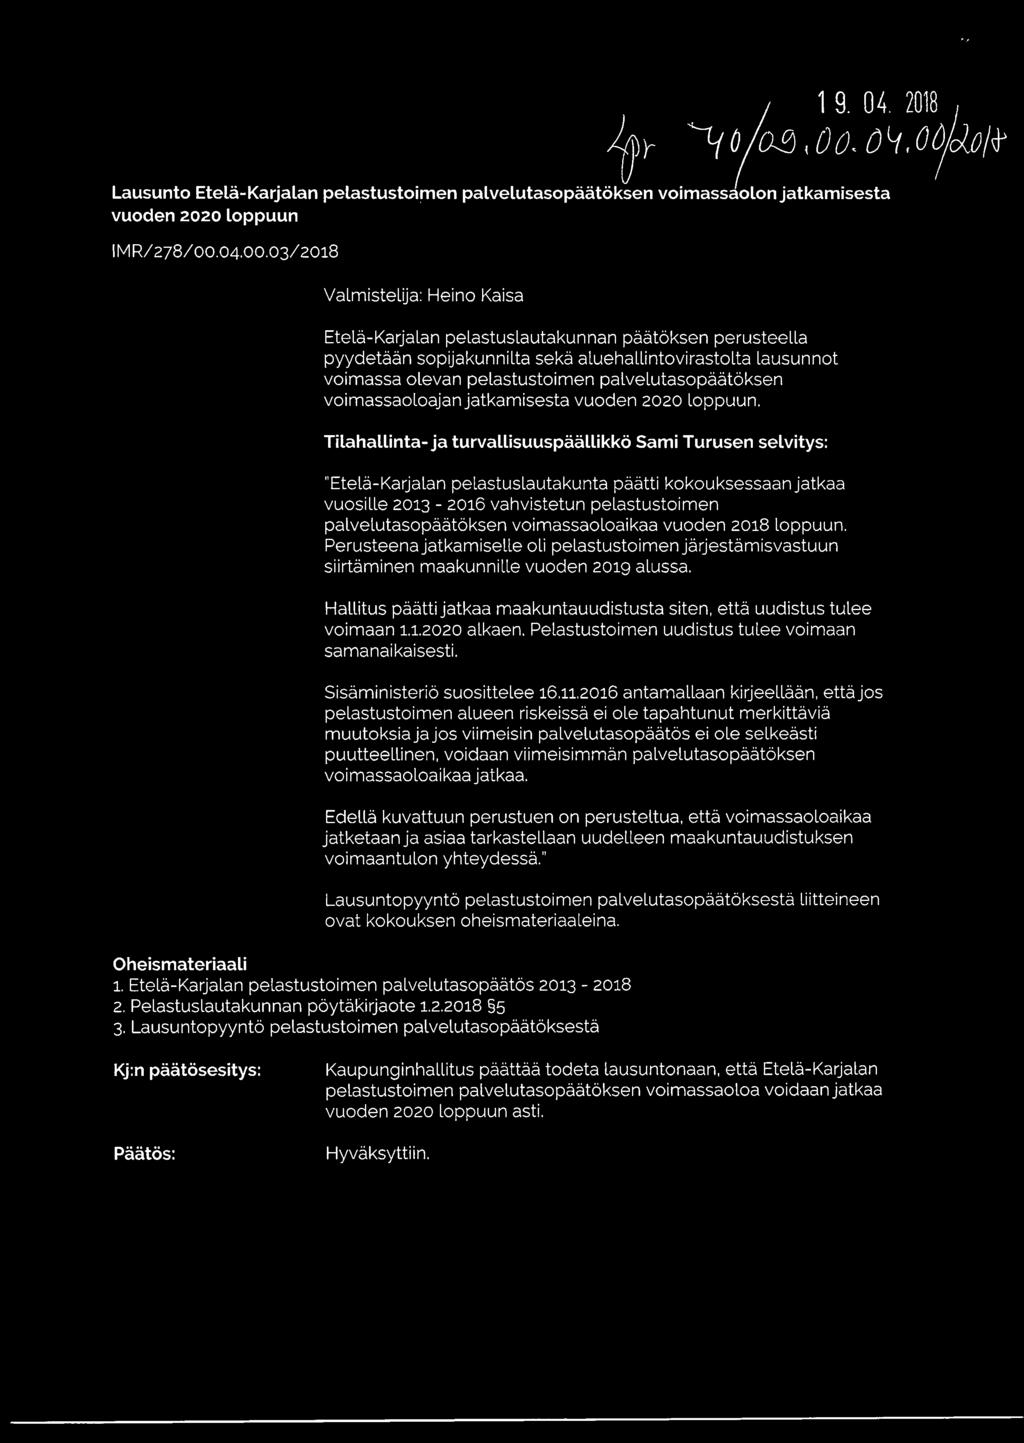 03/2018 Valmistelija: Heino Kaisa Etelä-Karjalan pelastuslautakunnan päätöksen perusteella pyydetään sopijakunnilta sekä aluehallintovirastolta lausunnot voimassa olevan pelastustoimen